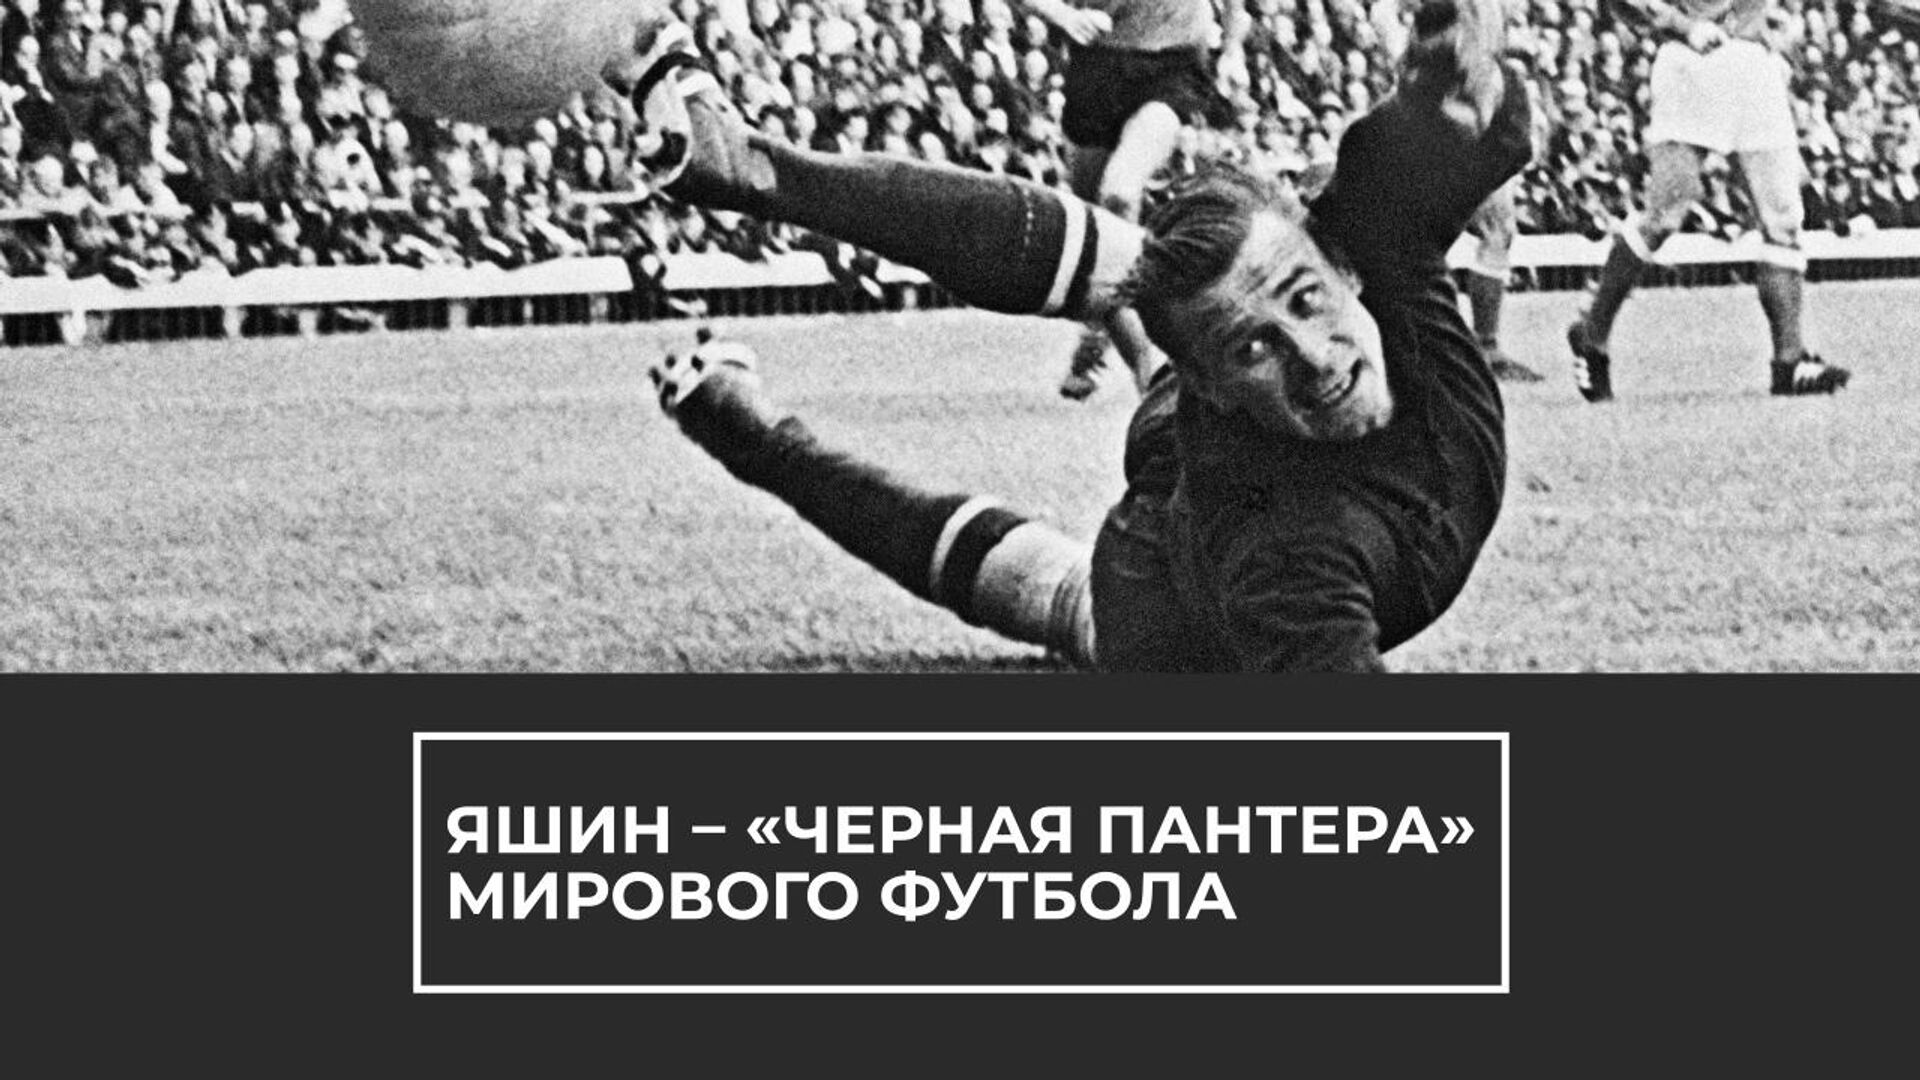 Лев Яшин золотой мяч 1963